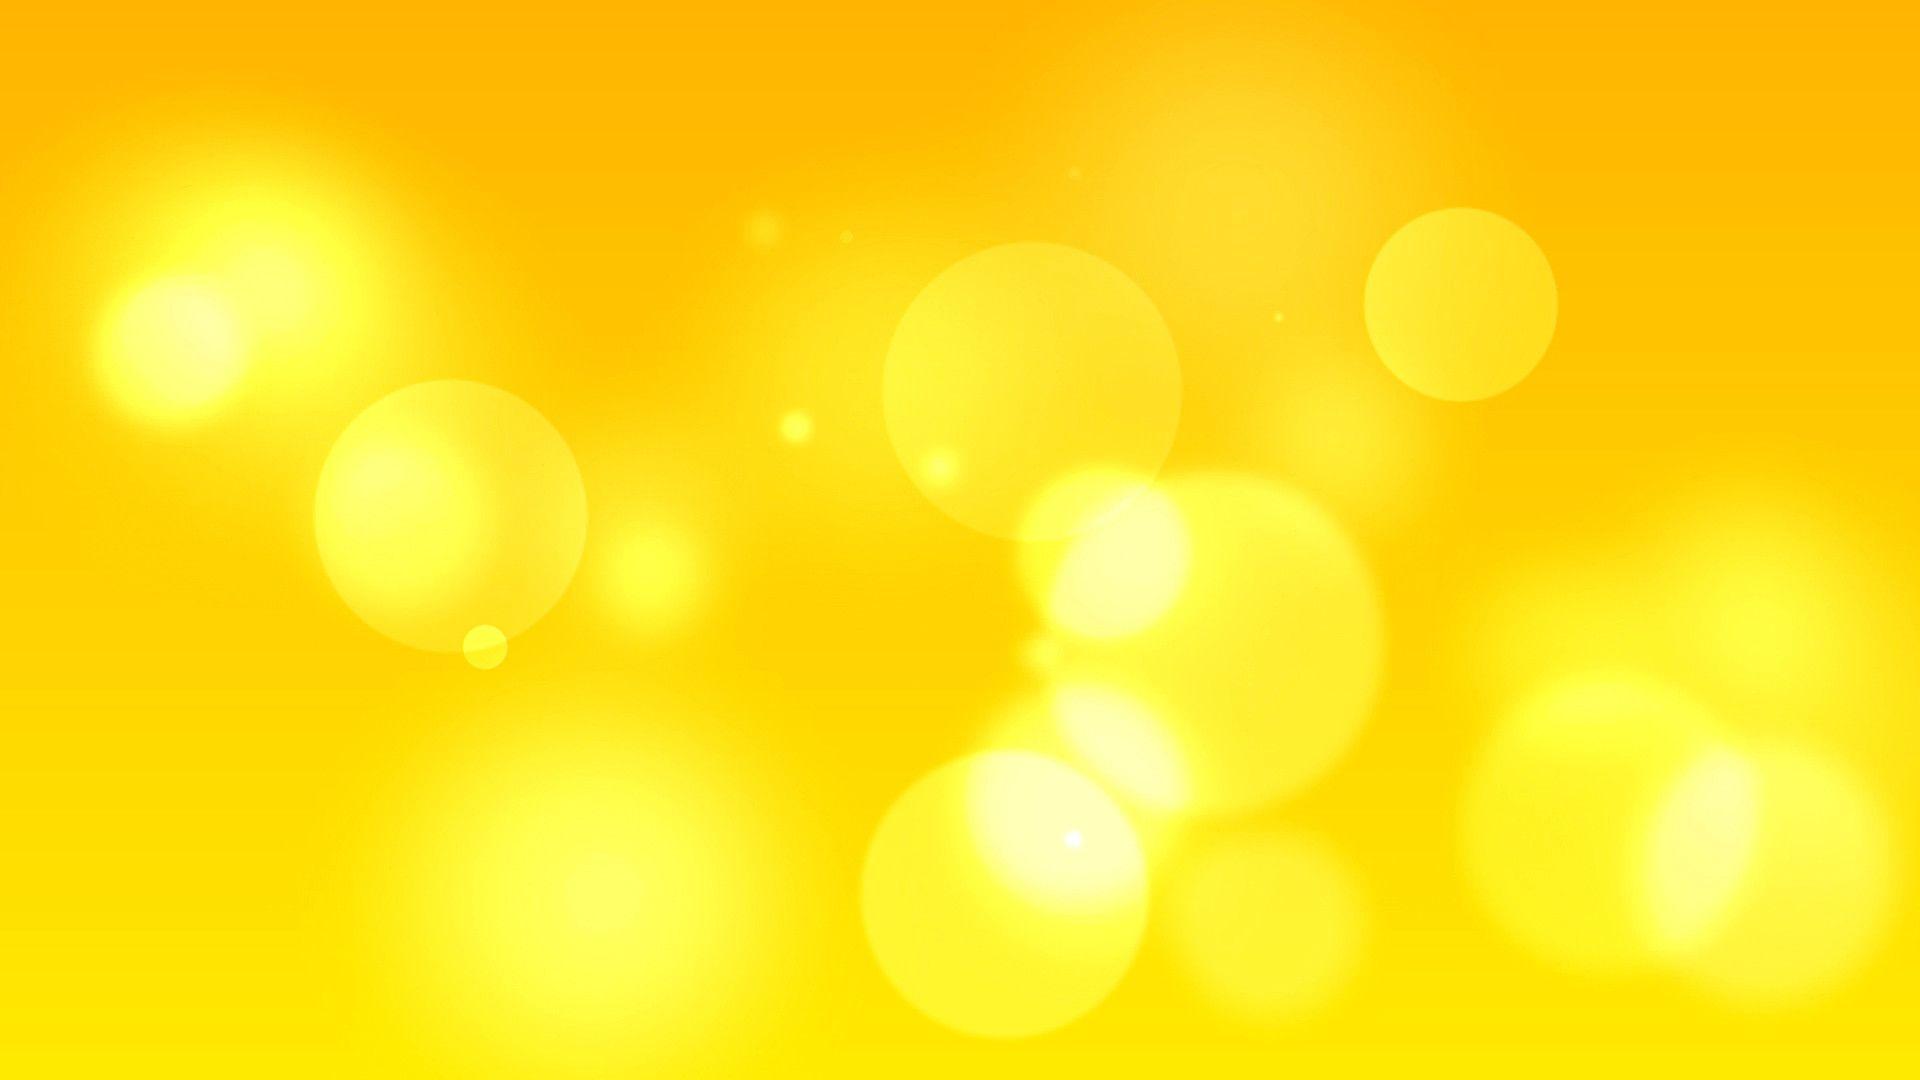 Download 640+ Background Kuning Foto Terbaik